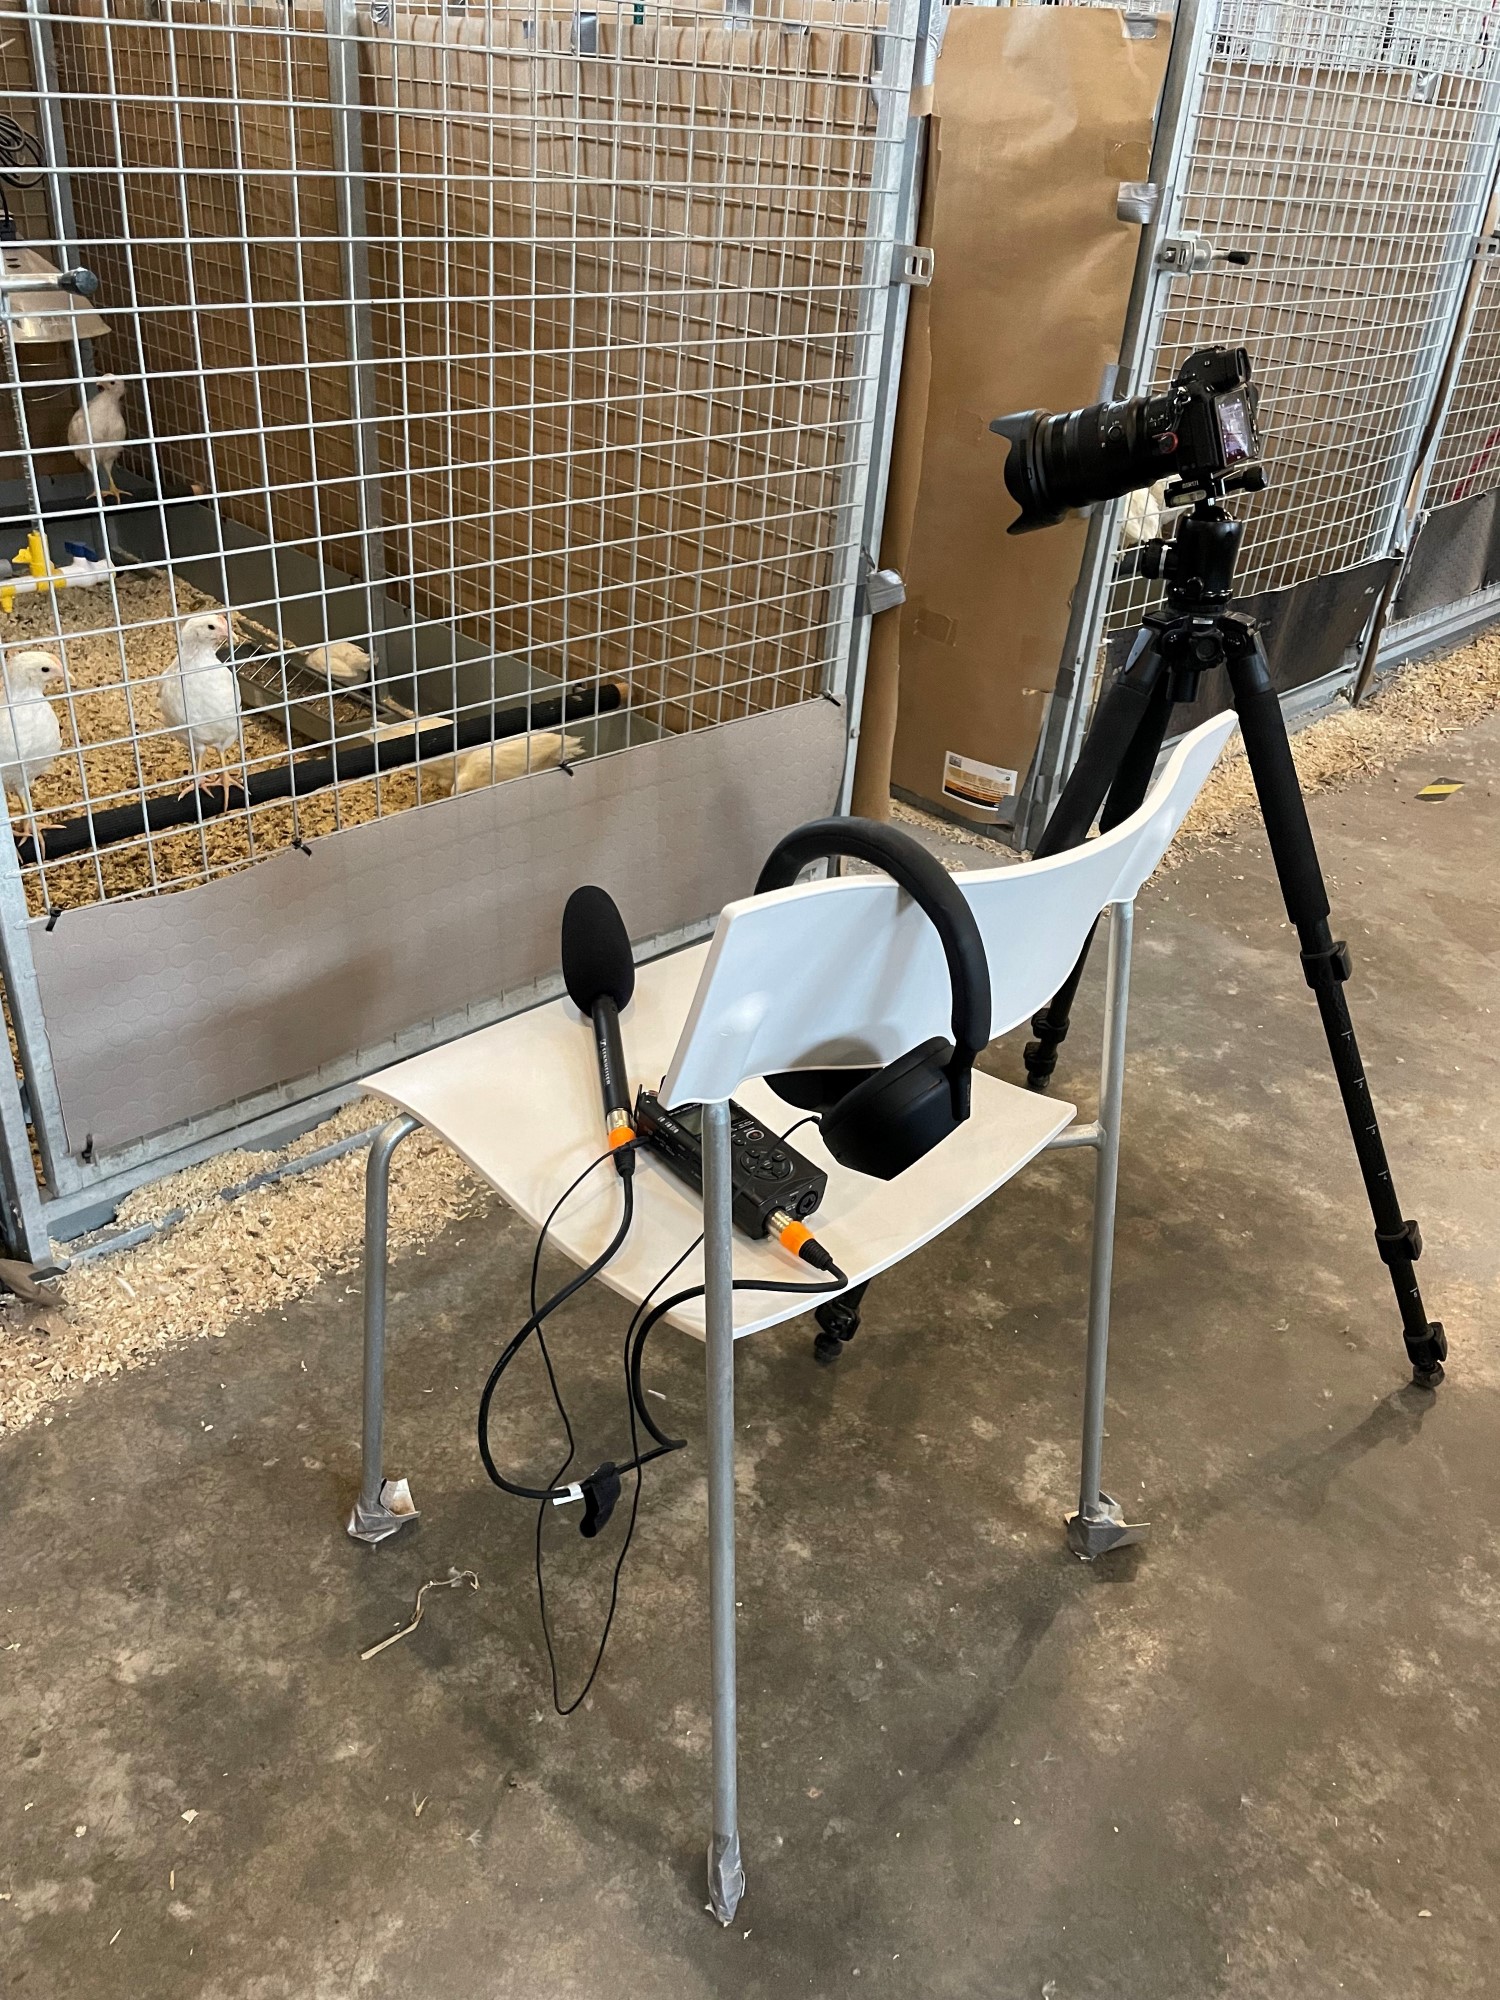 Ljudinspelningsutrustning och kamera på stativ framför fågelbur